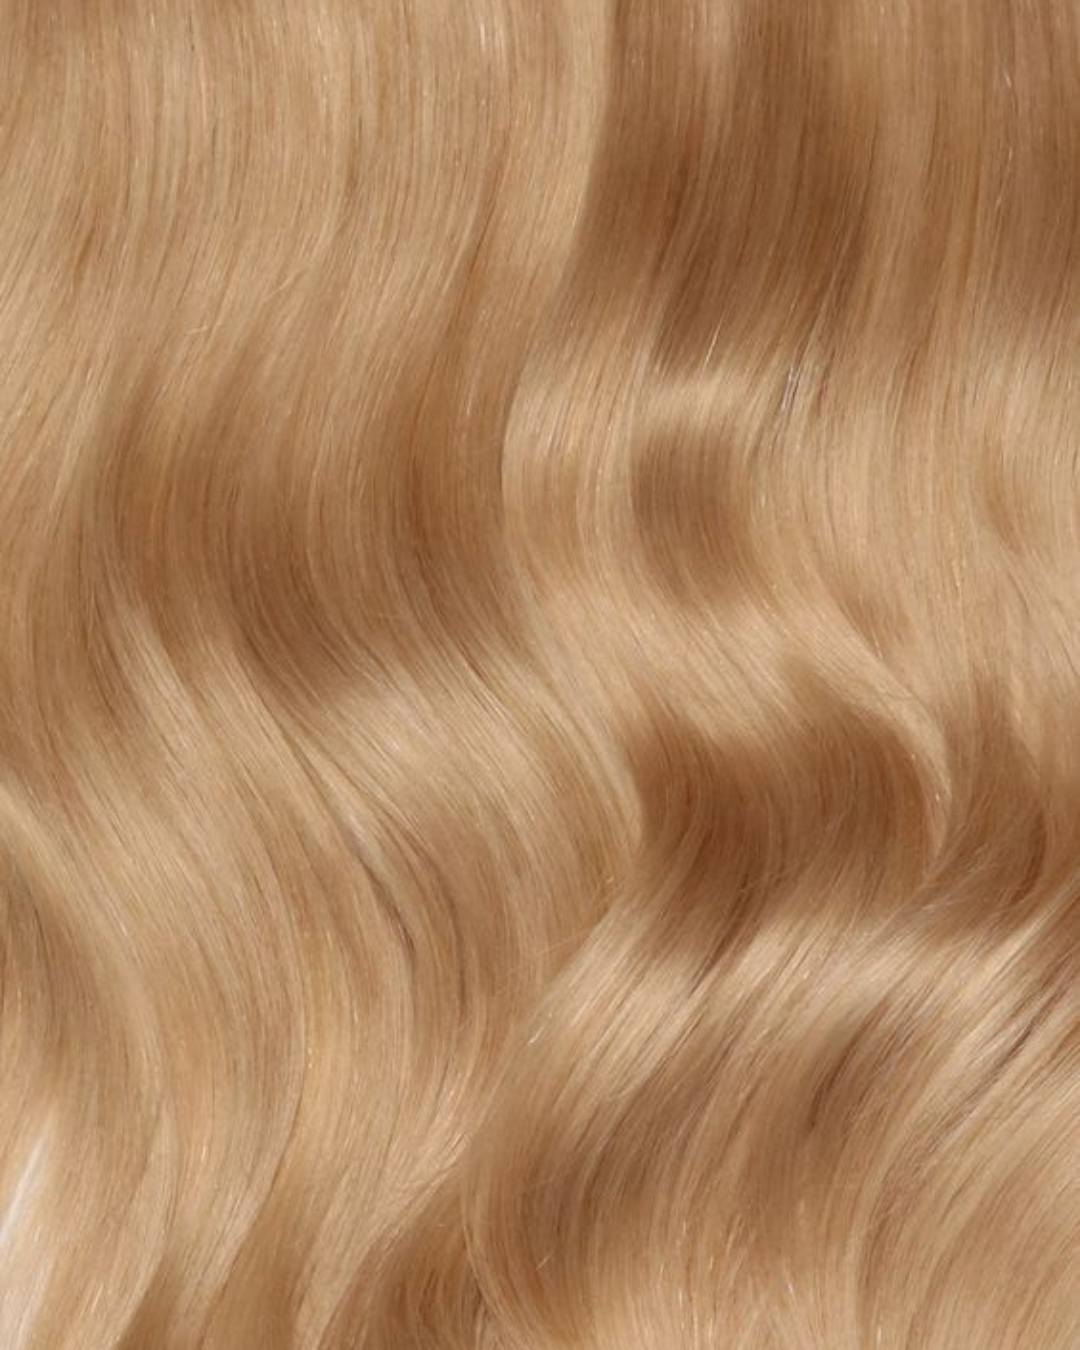 GAIA - Aplique de cabelo humano nanopele tic tac loiro de 45cm & 140g-150g MOJO